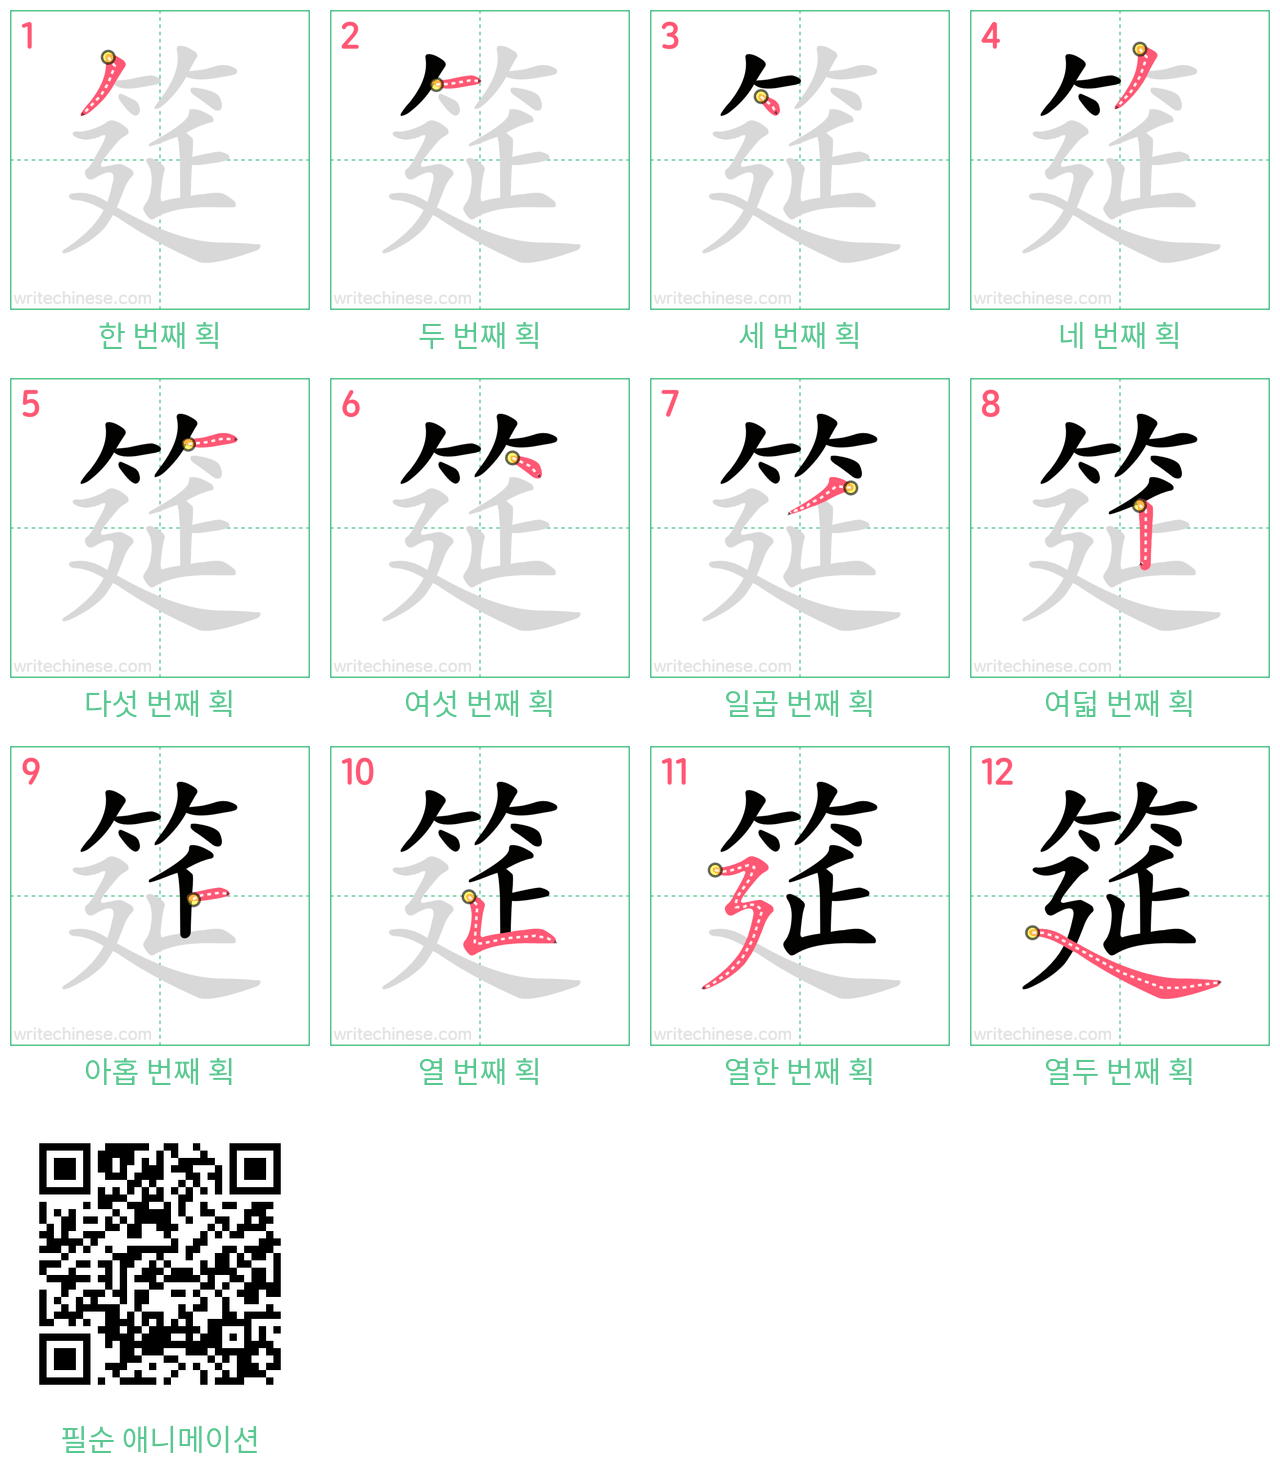 筵 step-by-step stroke order diagrams